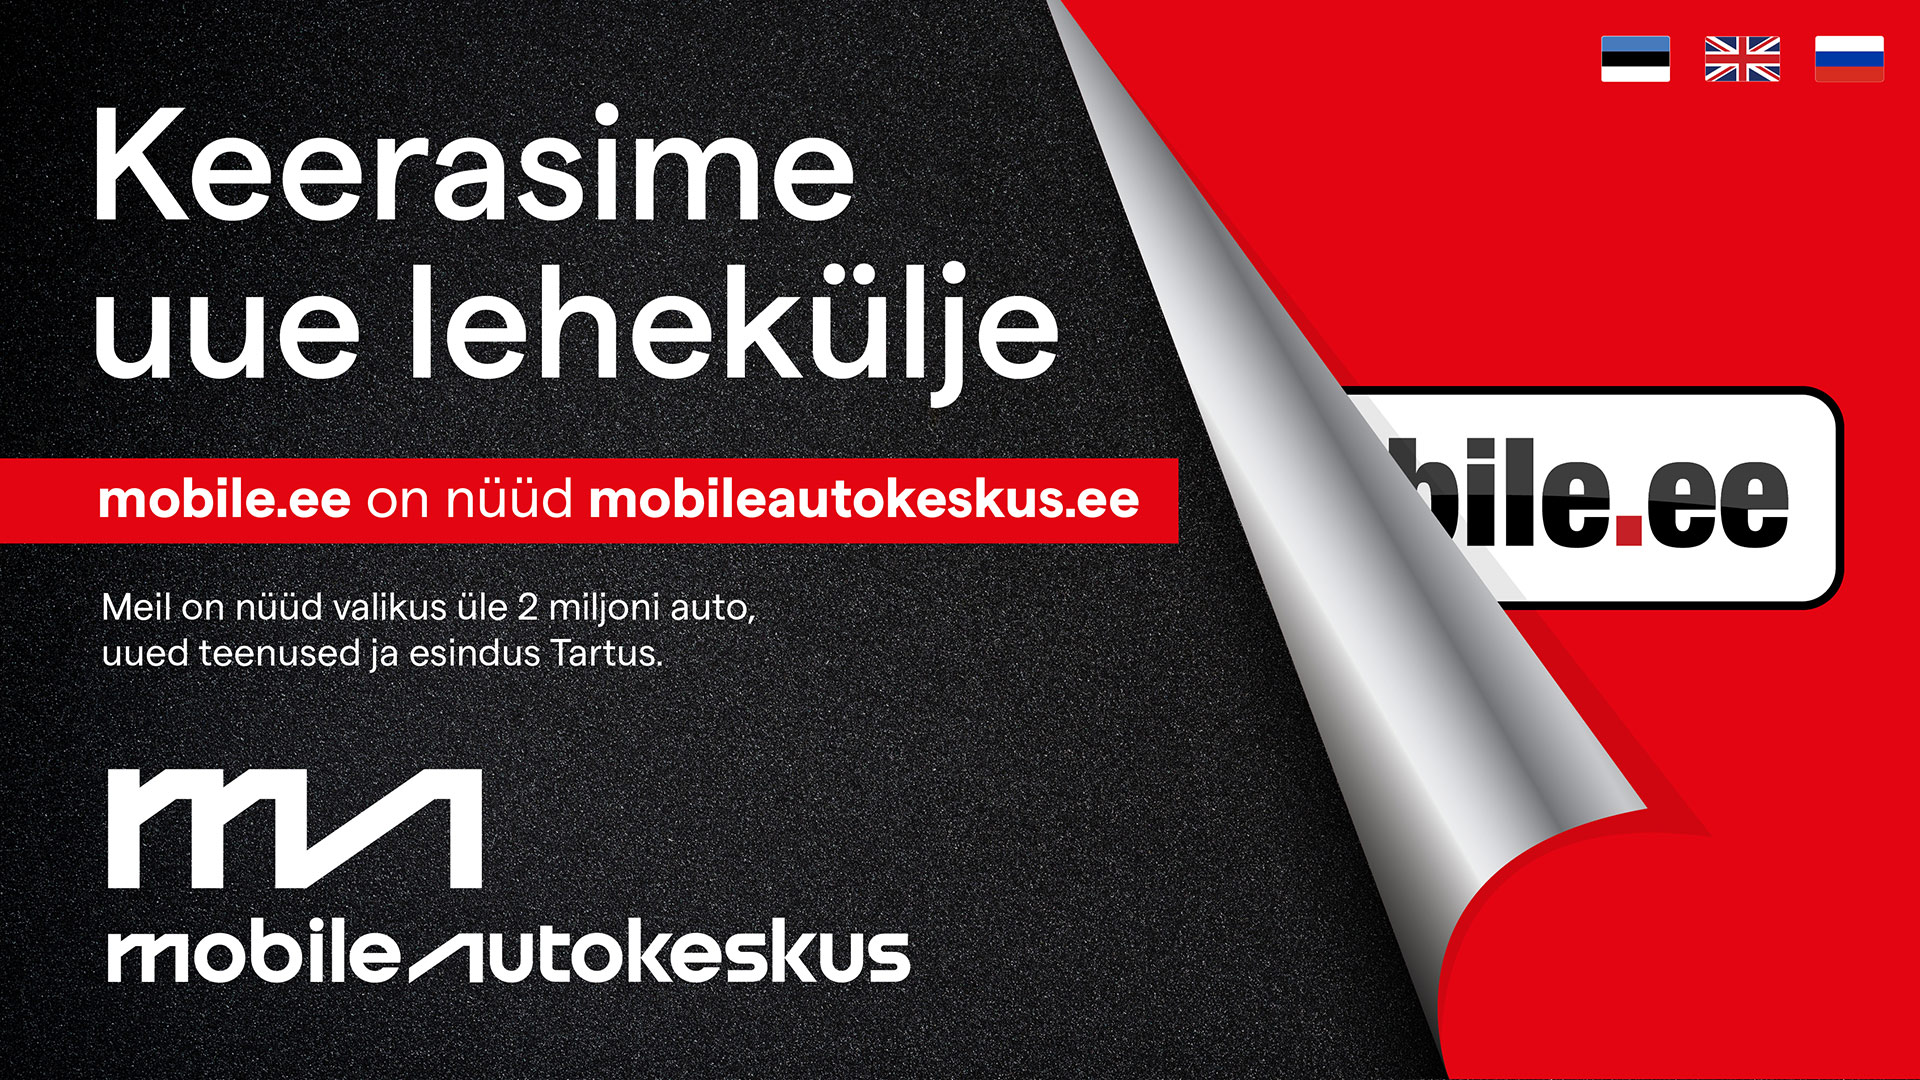 Keerasime uue lehekülje. Mobile.ee on nüüd mobileautokeskus.ee. Meil on nüüd valikus üle 2 miljoni auto, uued teenused ja esindus Tartus.